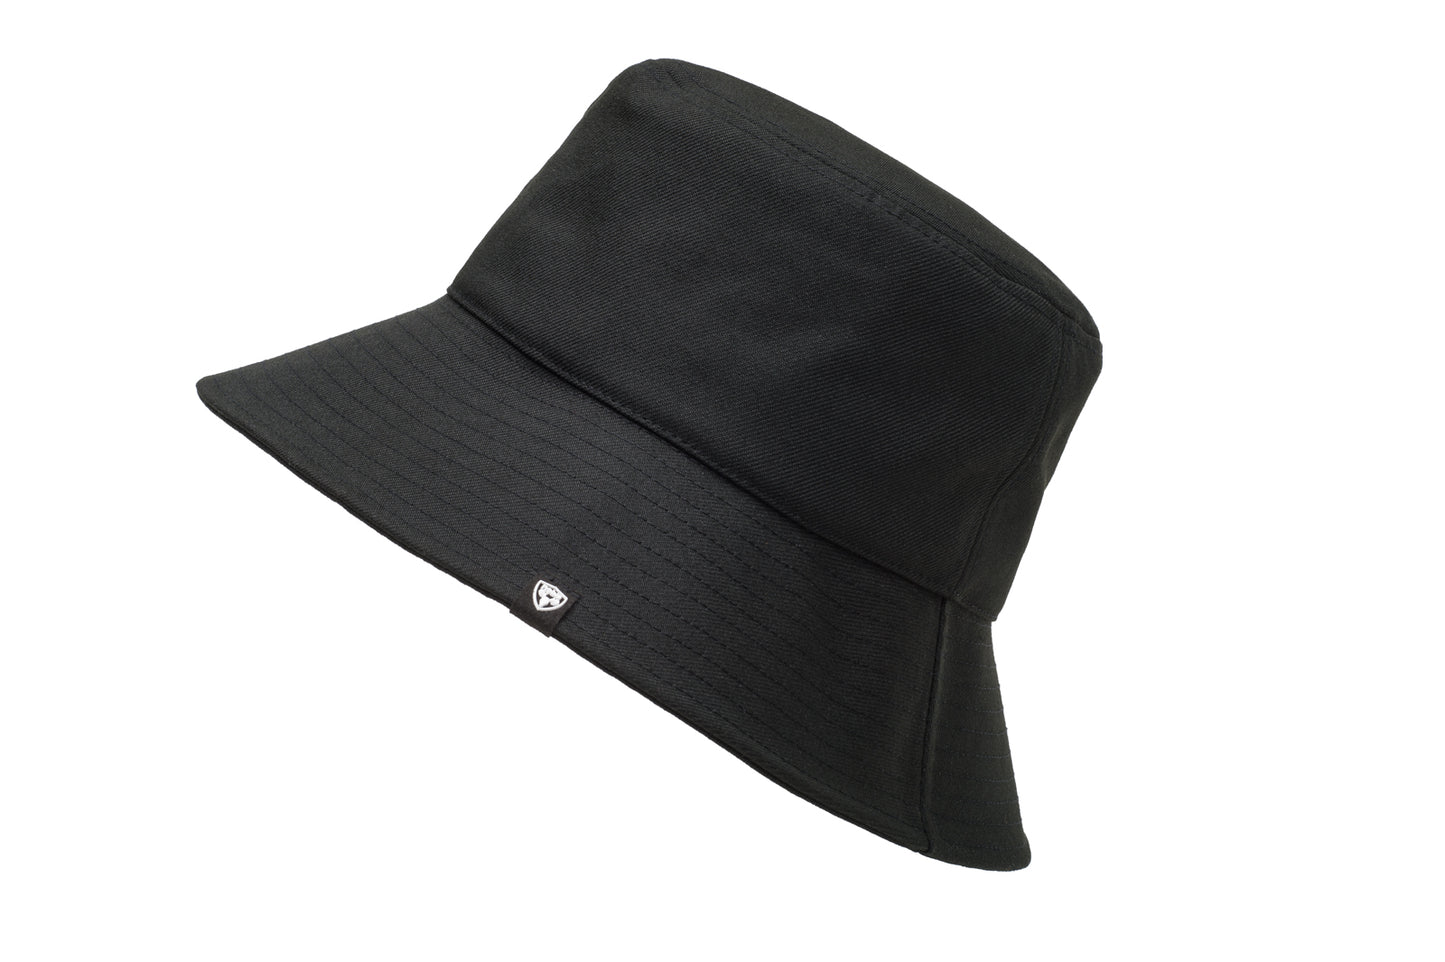 Unisex wide brim bucket hat with stitching detail on brim in Black